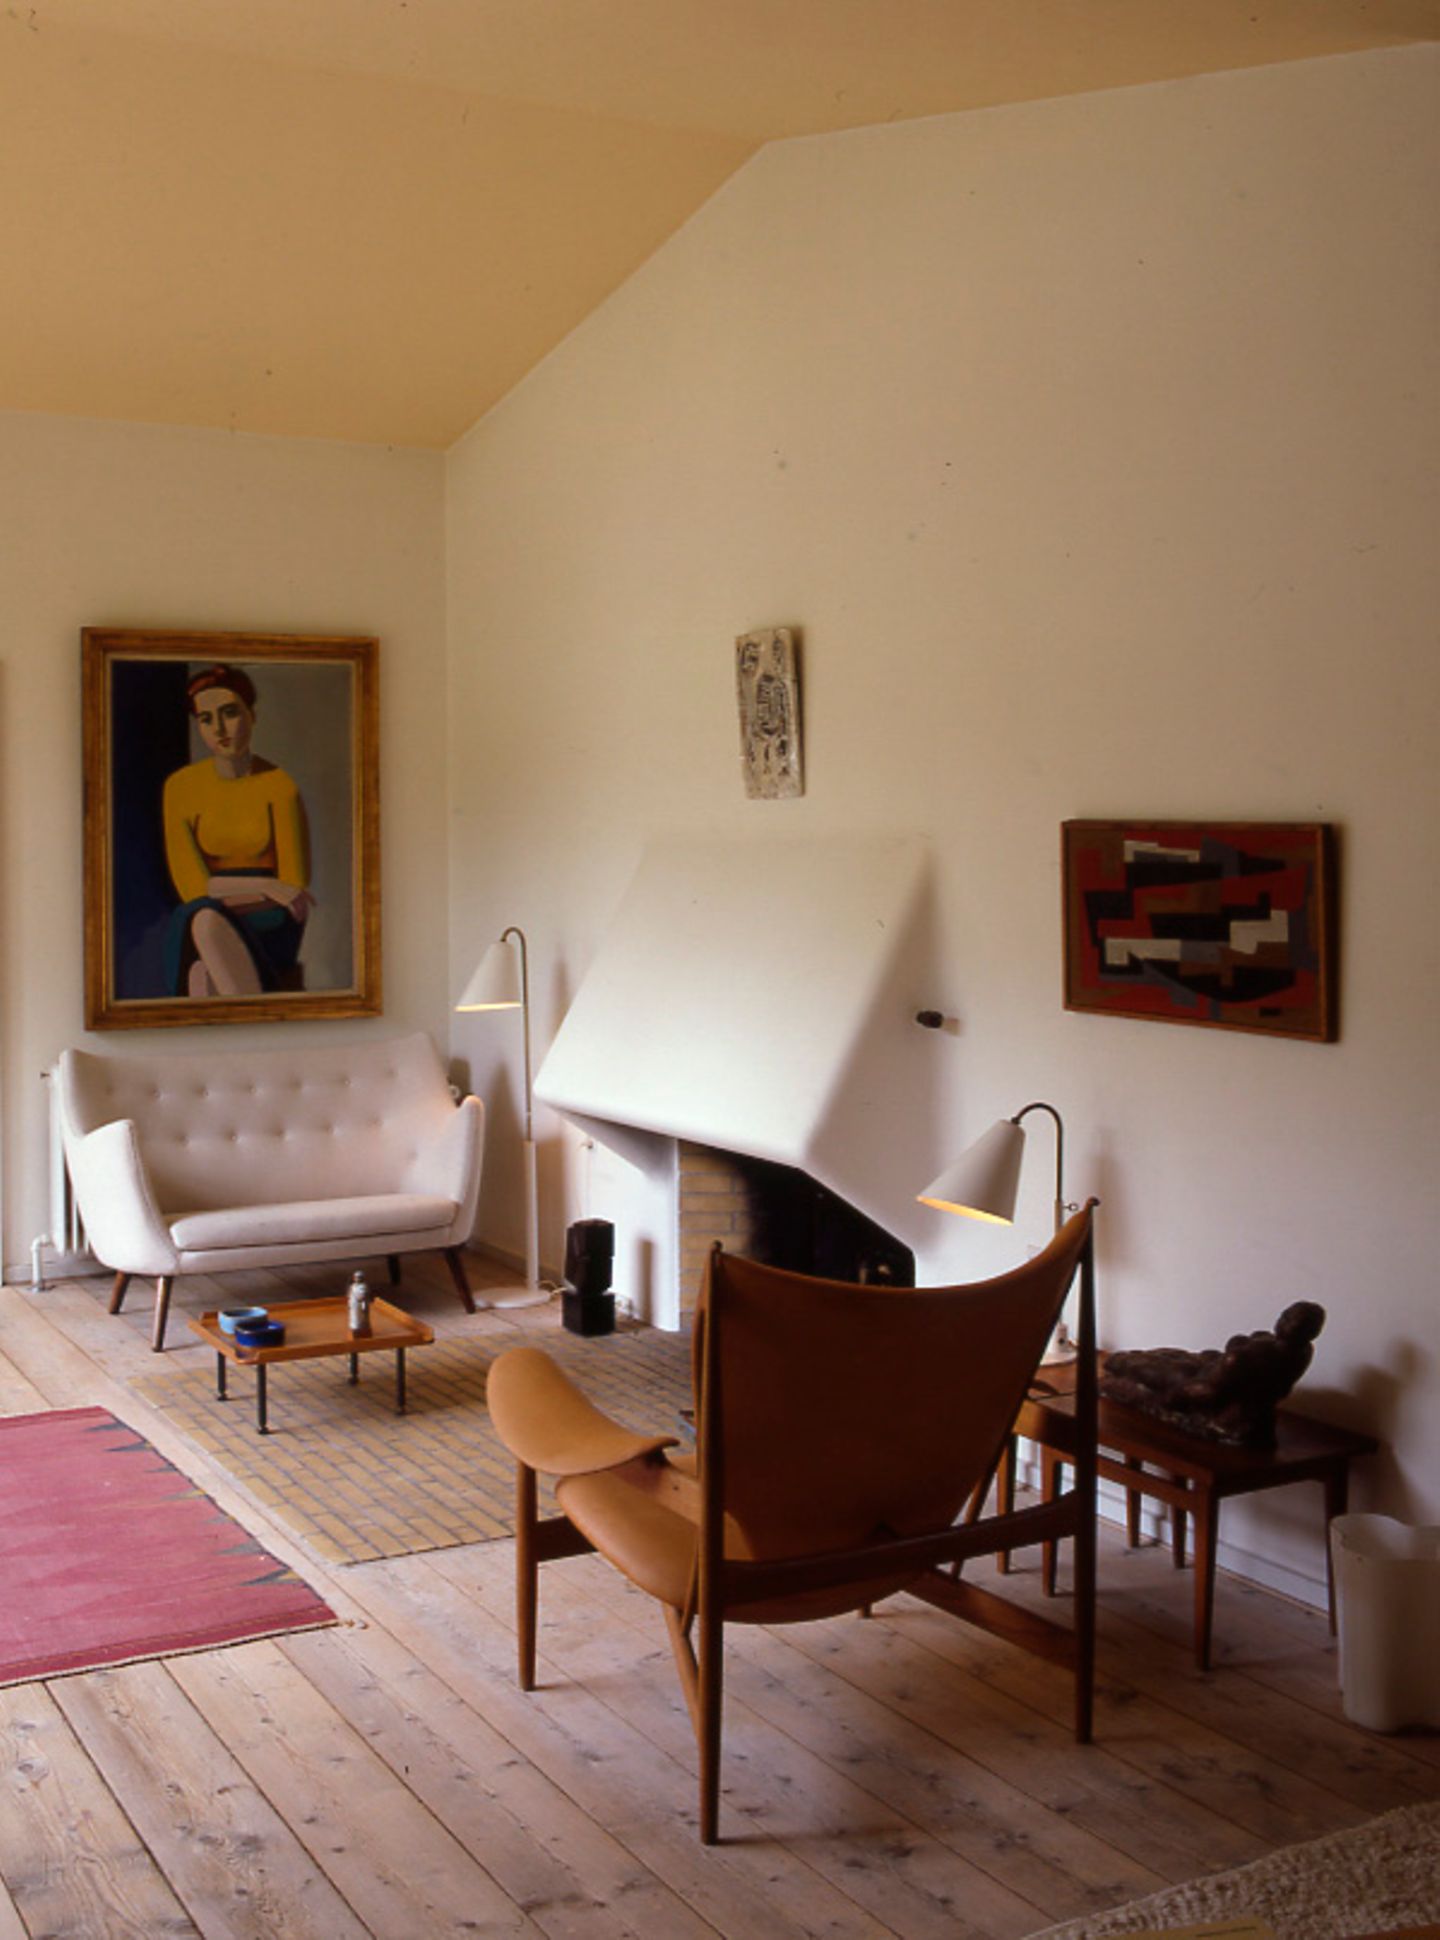 Gesamtkunstwerk: Finn Juhls Wohnhaus, Ordrupgaard